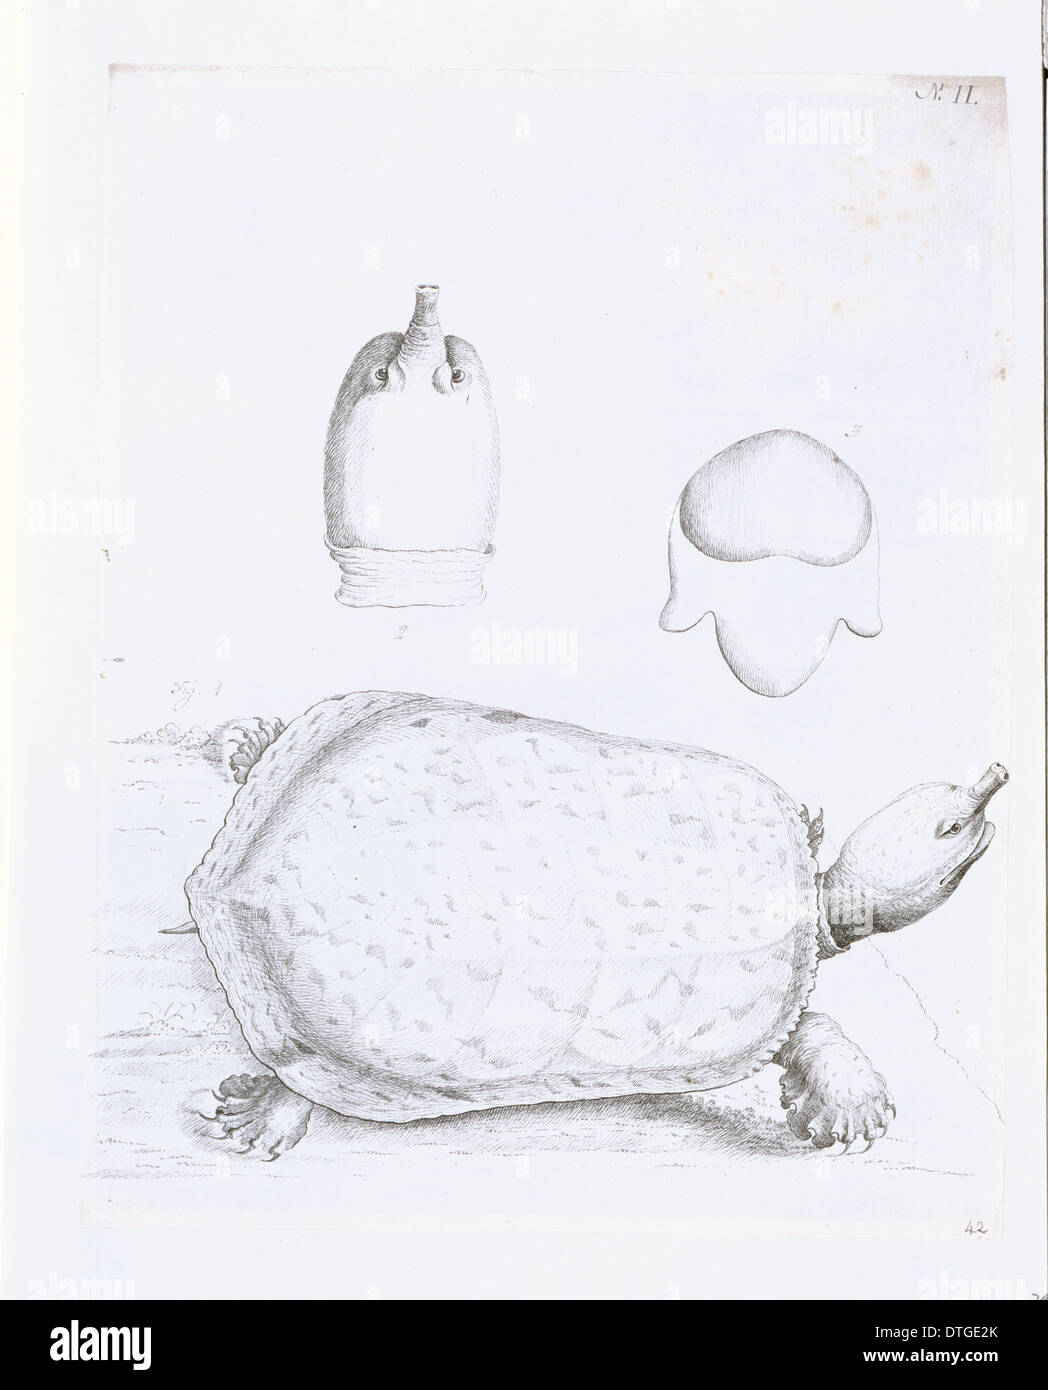 Namyda agassizii, soft shelled tortoise of Georgia Stock Photo